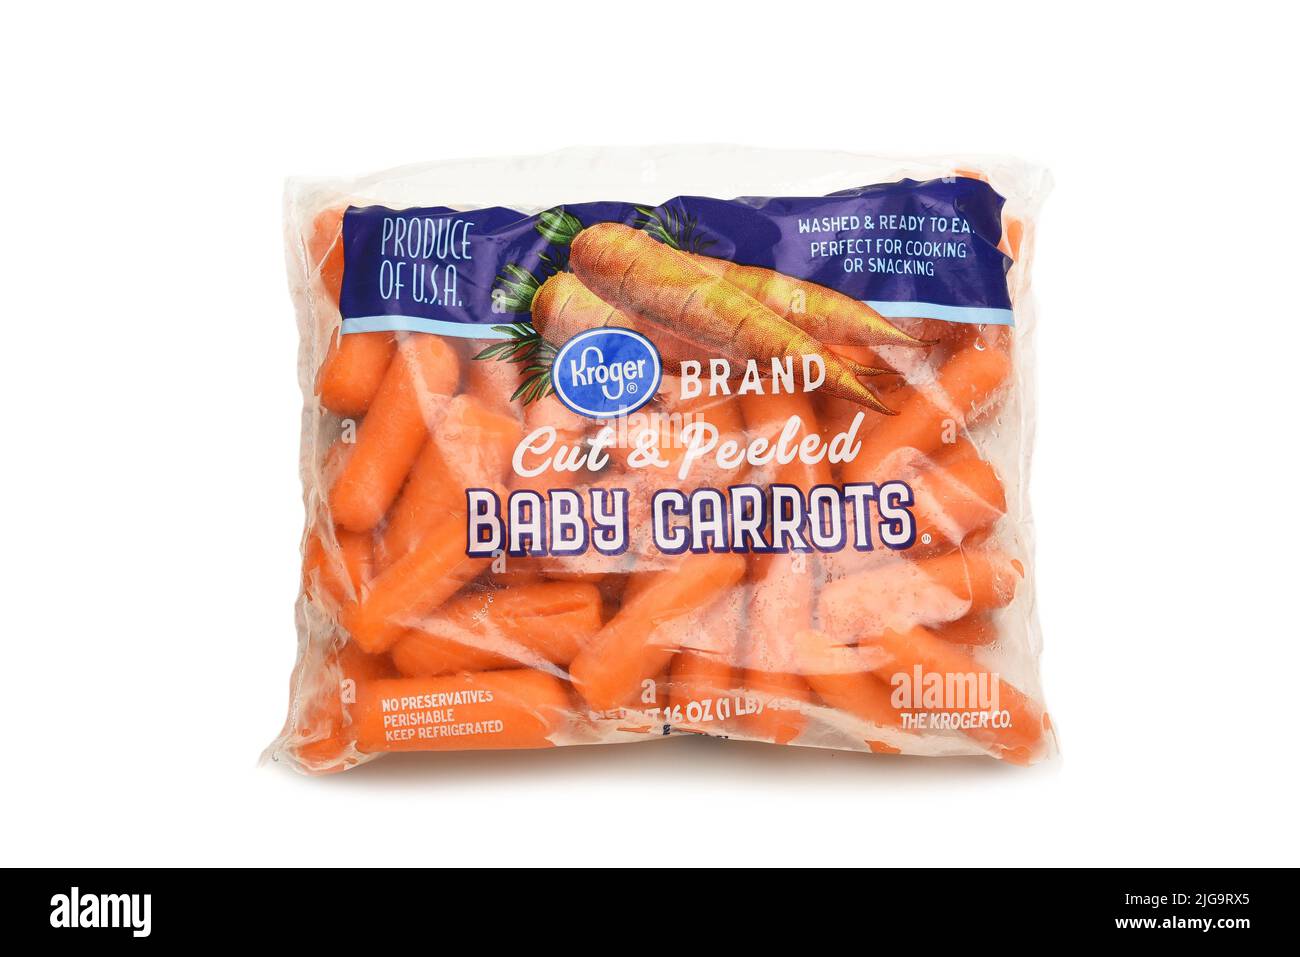 IRVINE, CALIFORNIE - 8 juillet 2022: Un paquet de carottes bébé Kroger. Banque D'Images